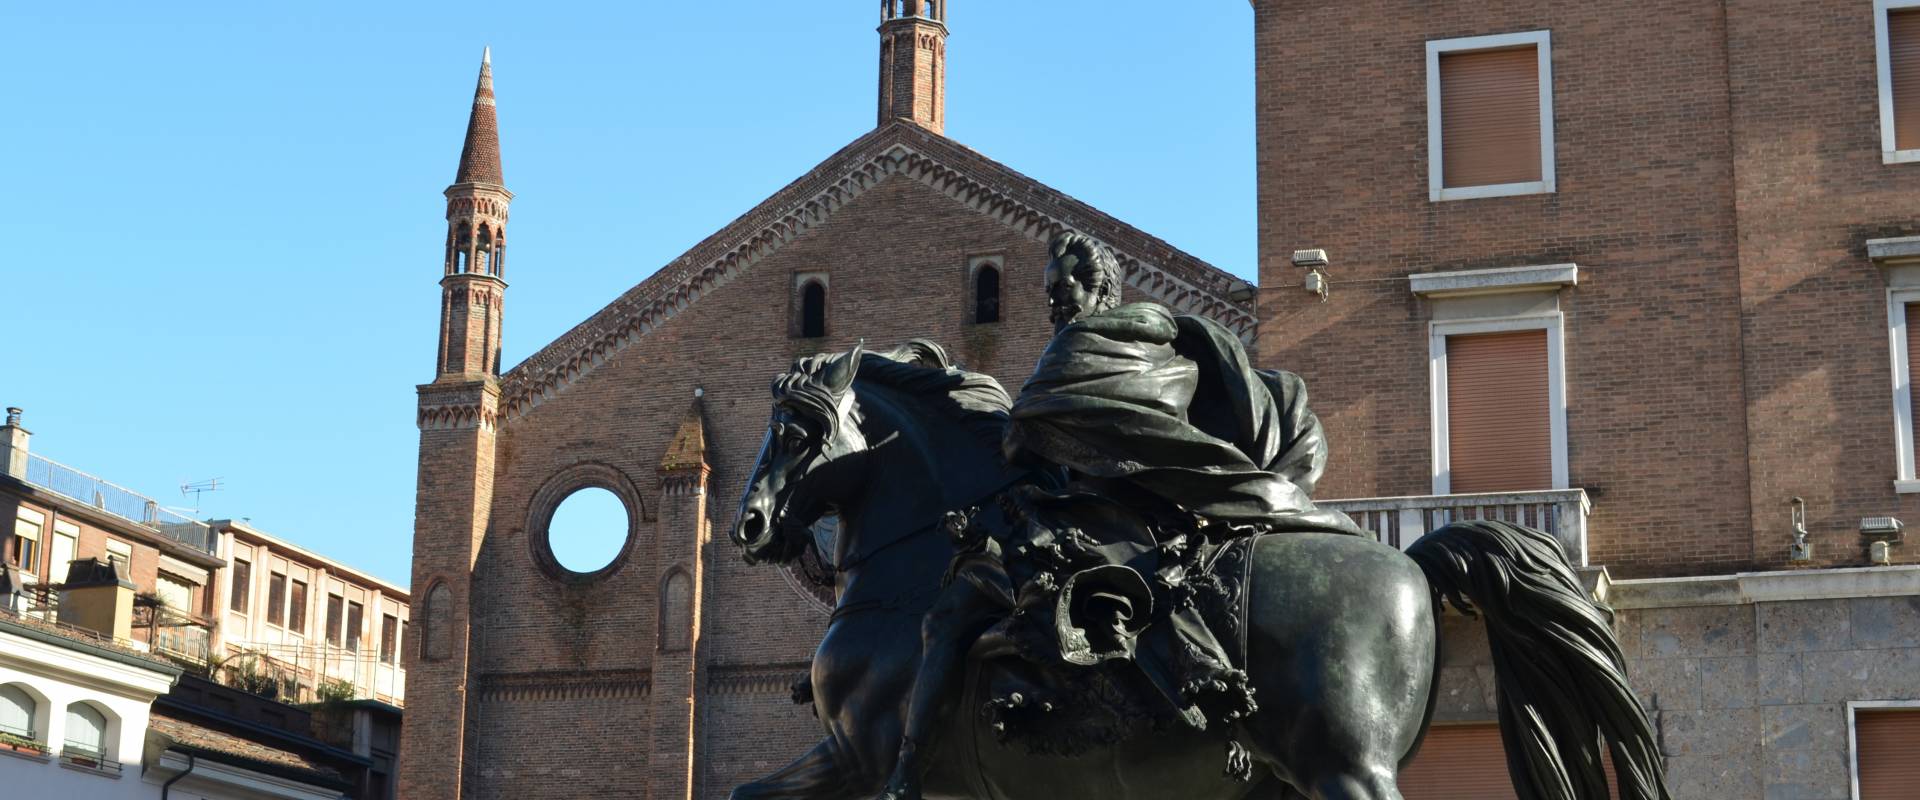 Statue Equestri Alessandro Farnese foto di Victoriaproko